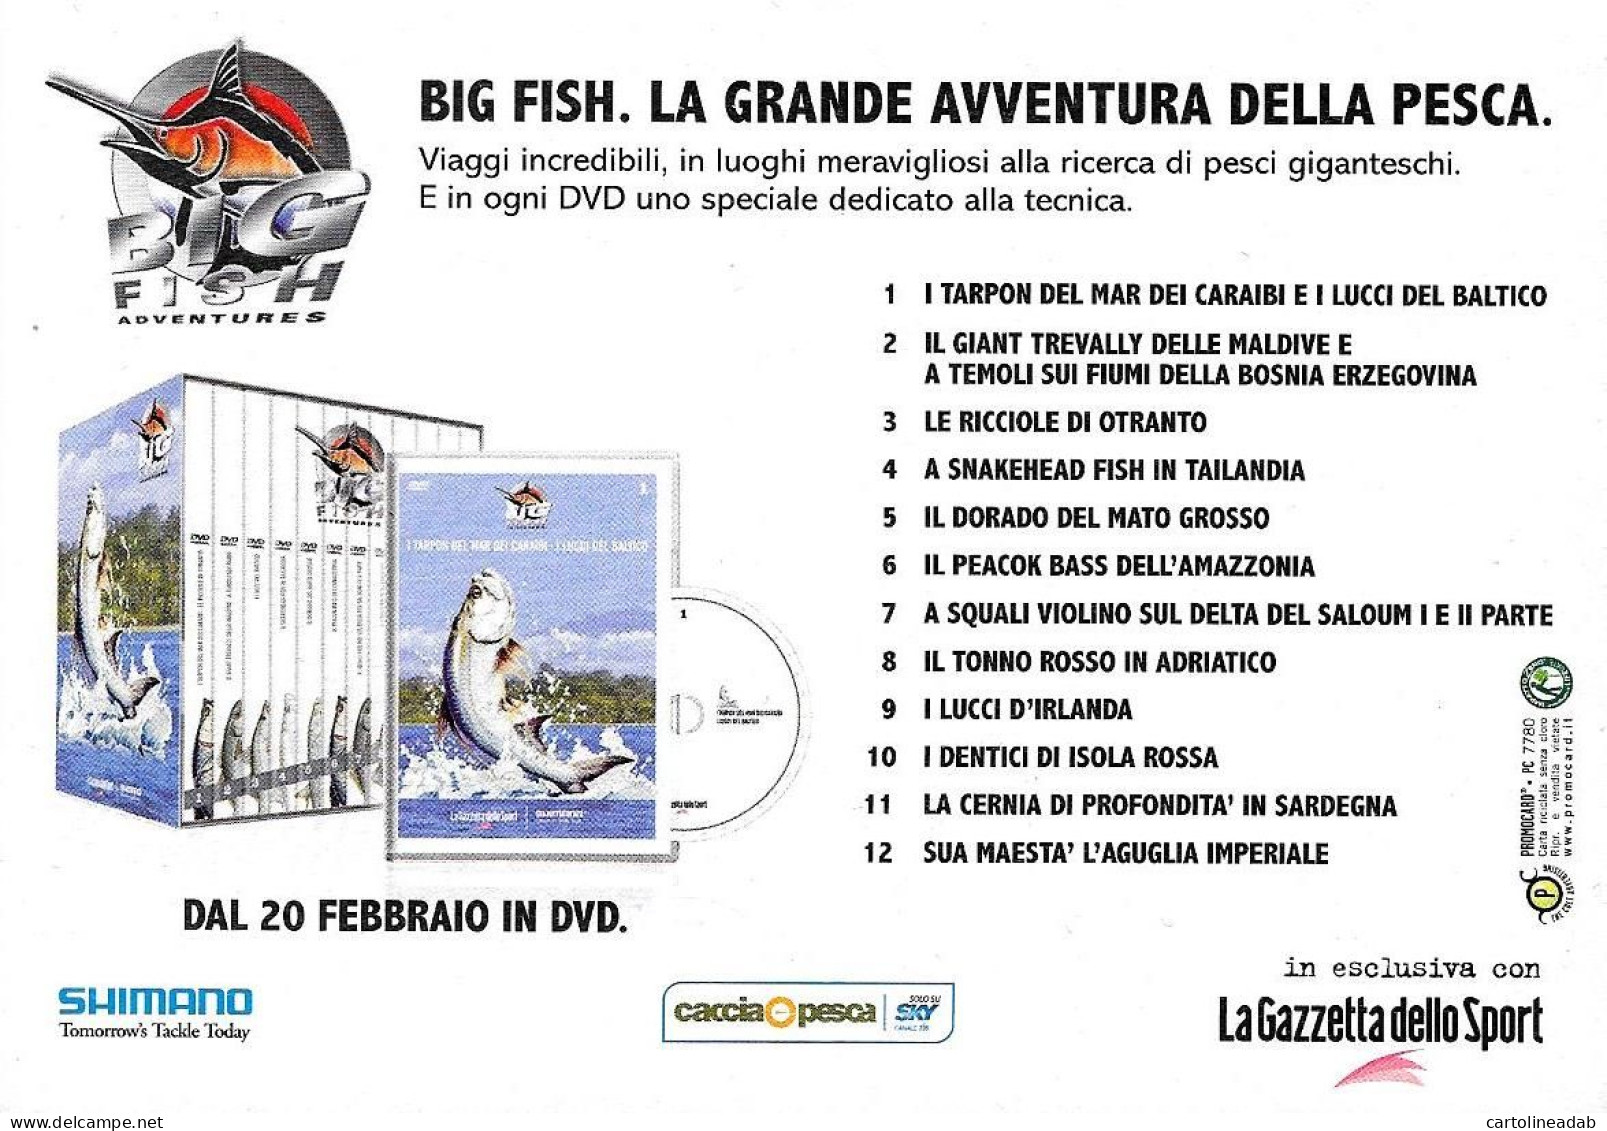 [MD9447] CPM - BIG FISH LA GRANDE AVVENTURA DELLA PESCA DVD - PROMOCARD 7780 - PERFETTA - Non Viaggiata - Advertising